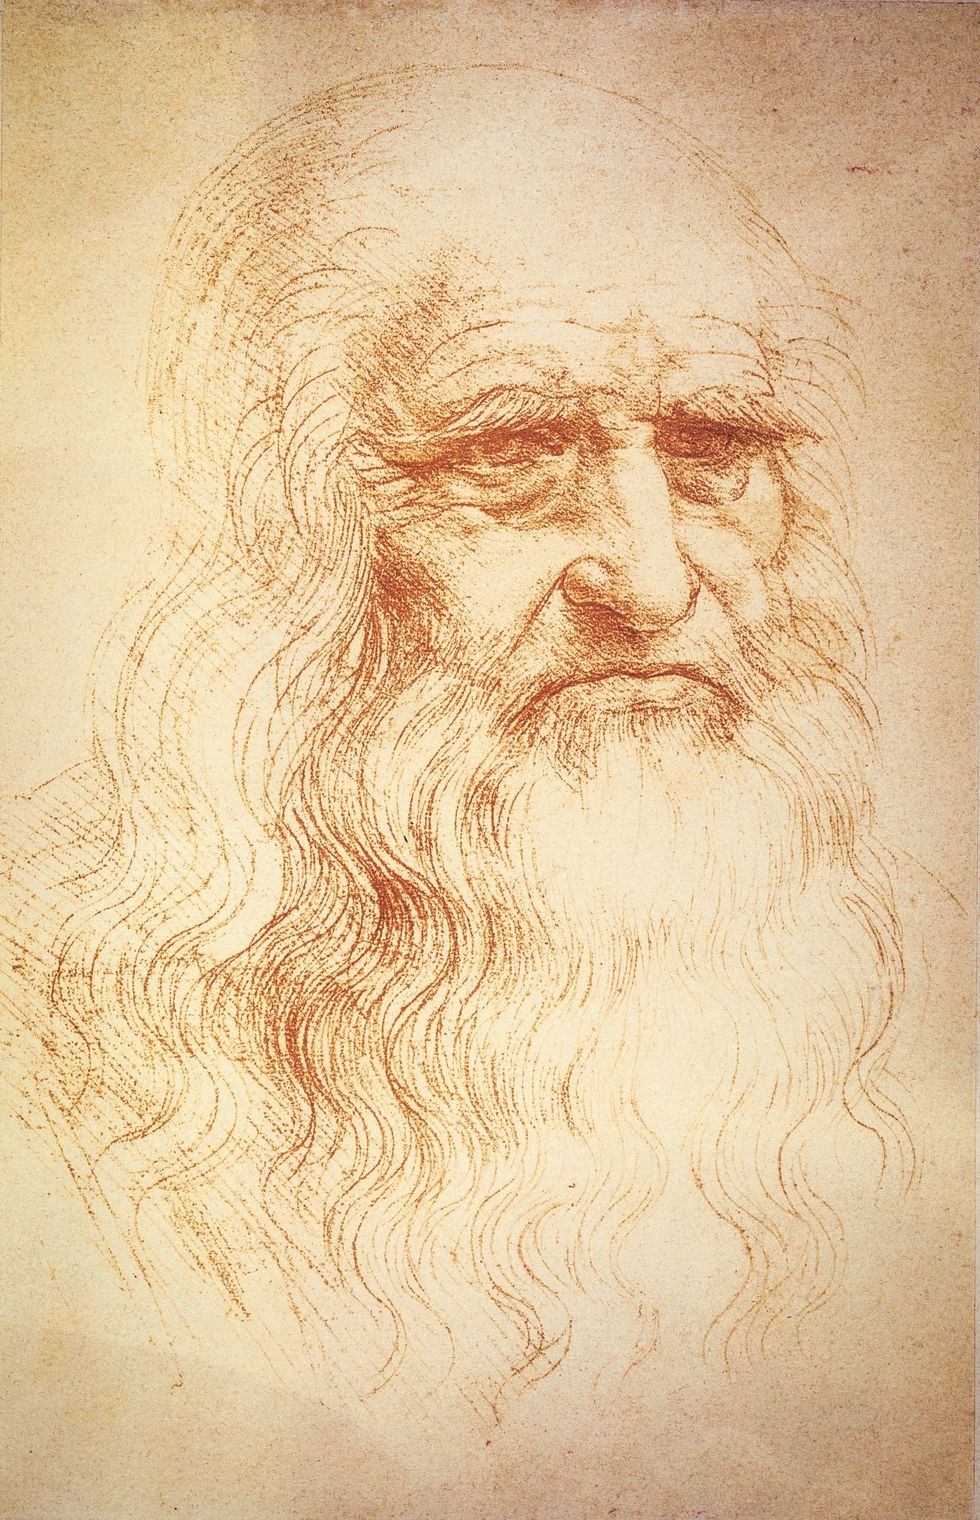 Da Vinci maakte deze tekening waarvan wordt aangenomen dat het een zelfportret is in zijn Milanese tijd rond 1512 Biblioteca Reale Turijn